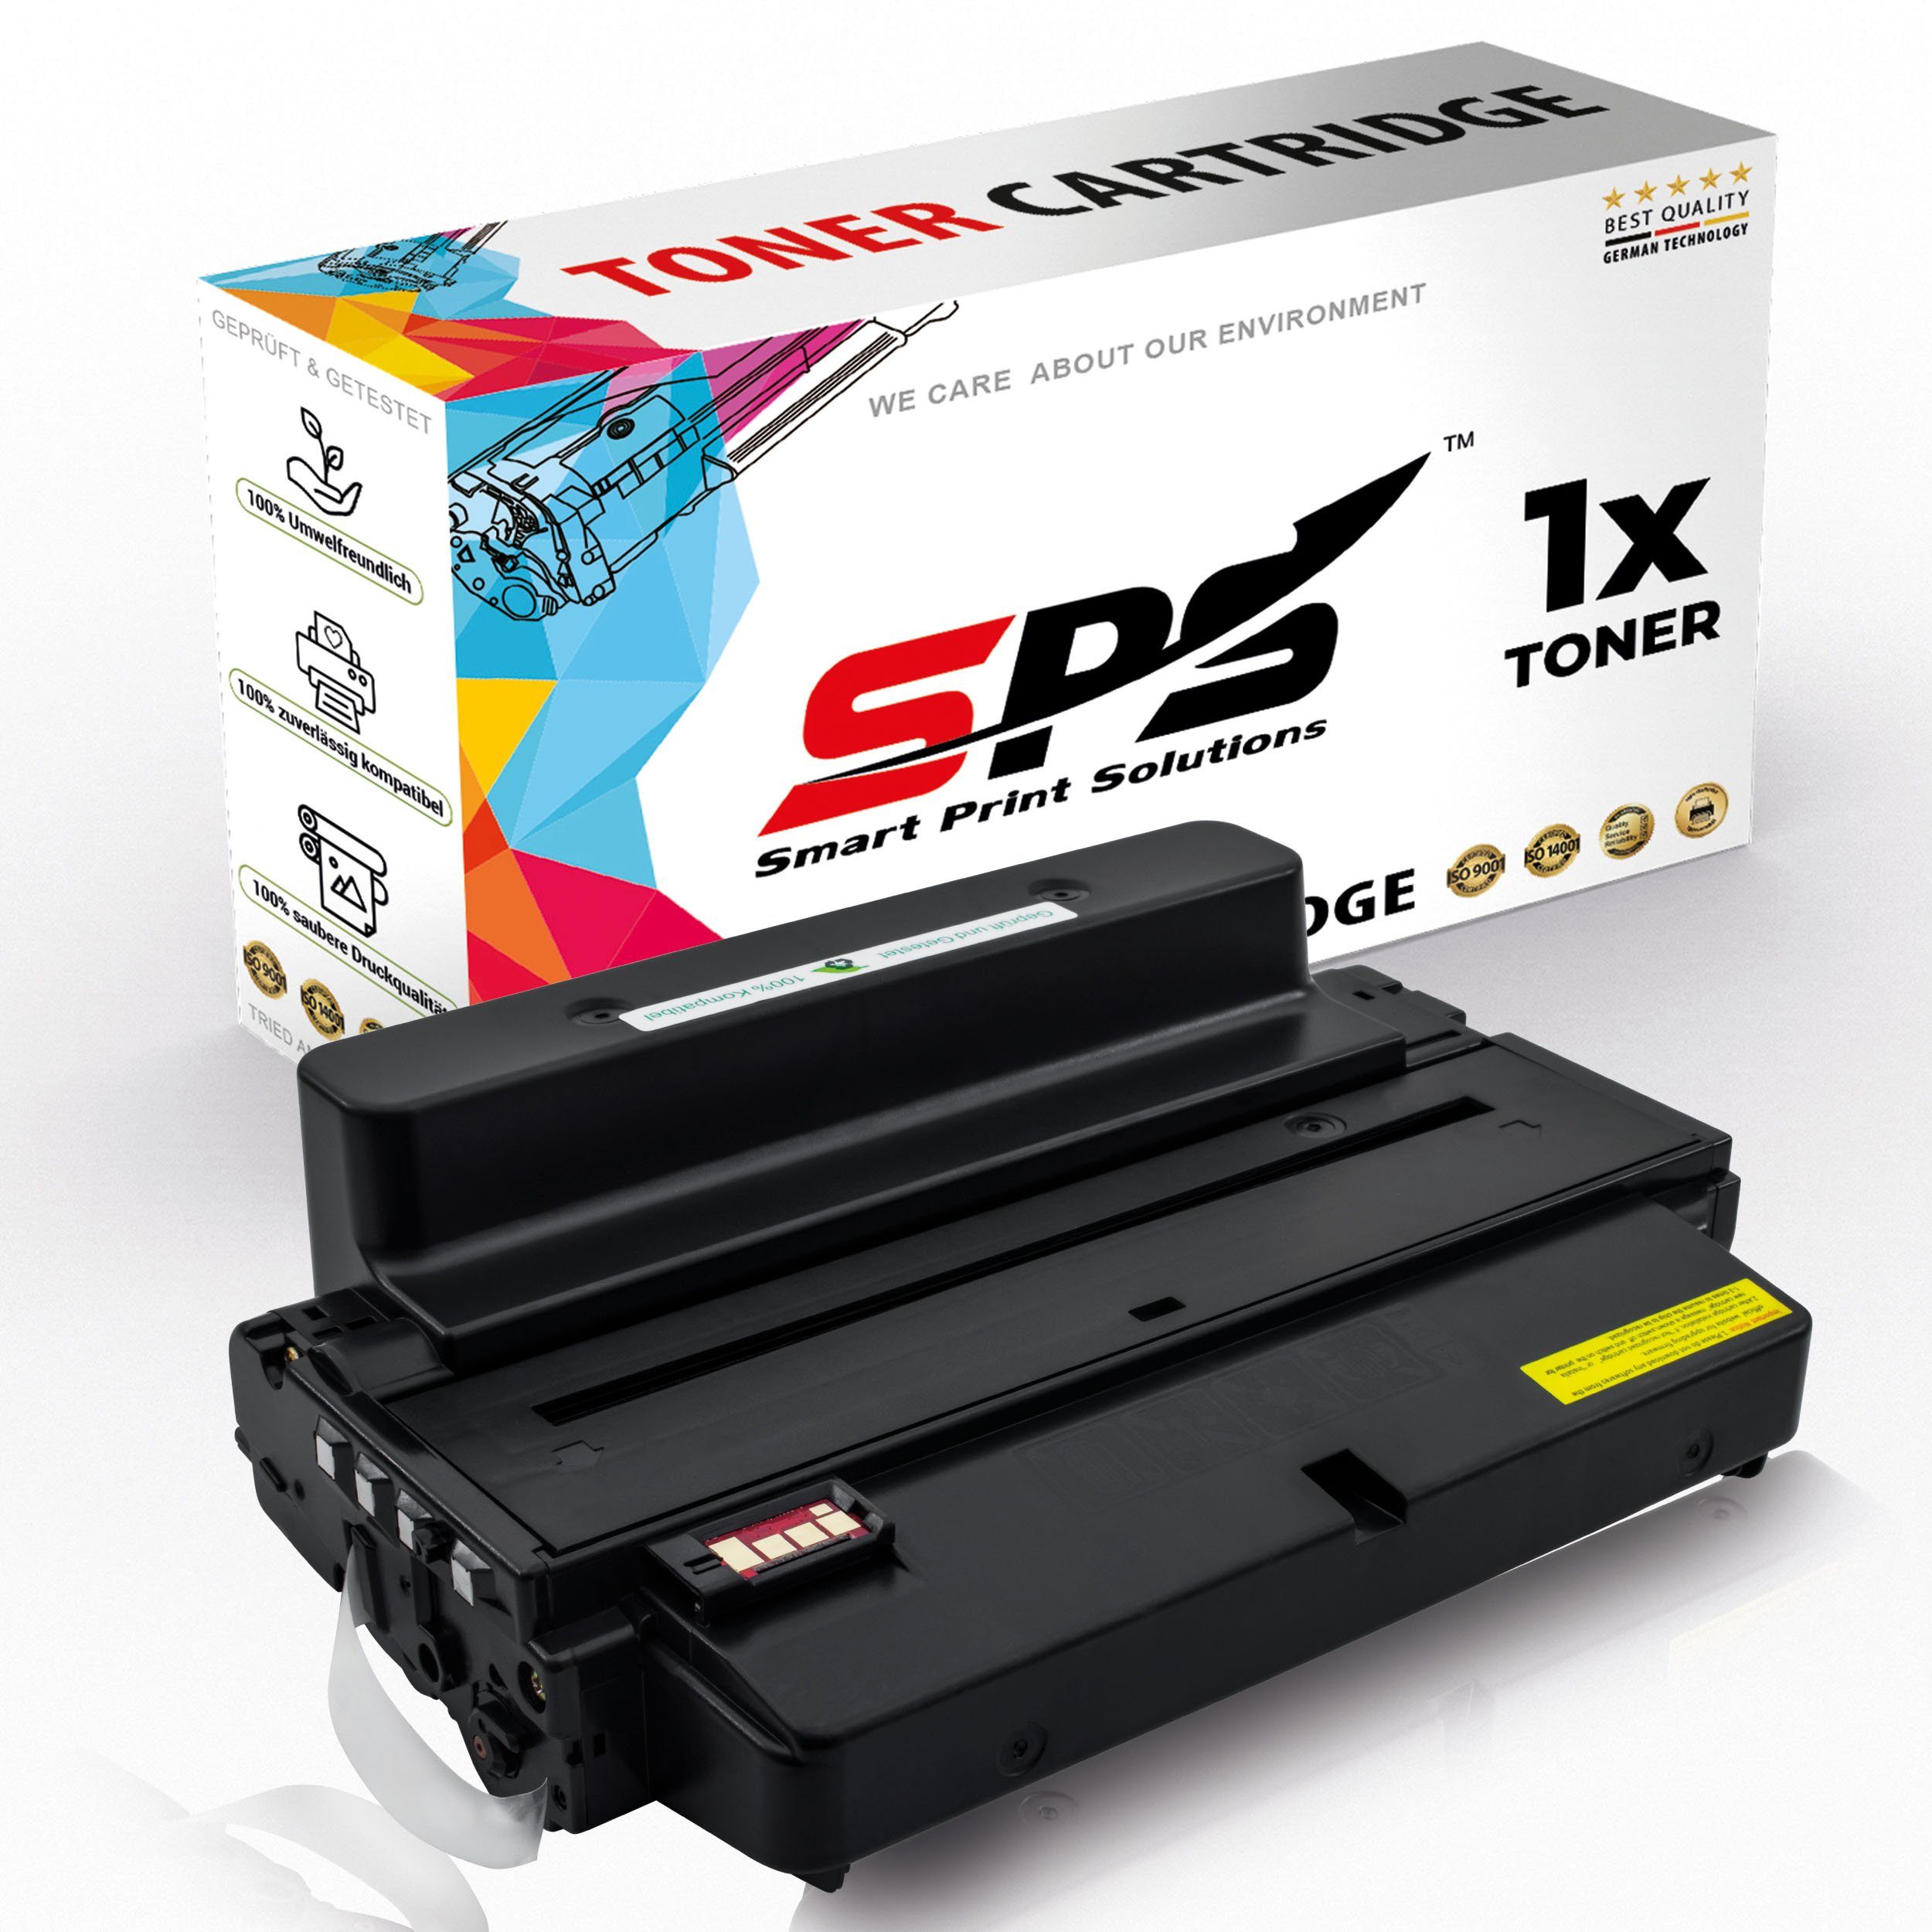 SPS Tonerkartusche Kompatibel für Samsung SCX-5639 (MLT-D205L/205L), (1er Pack, 1x Toner)